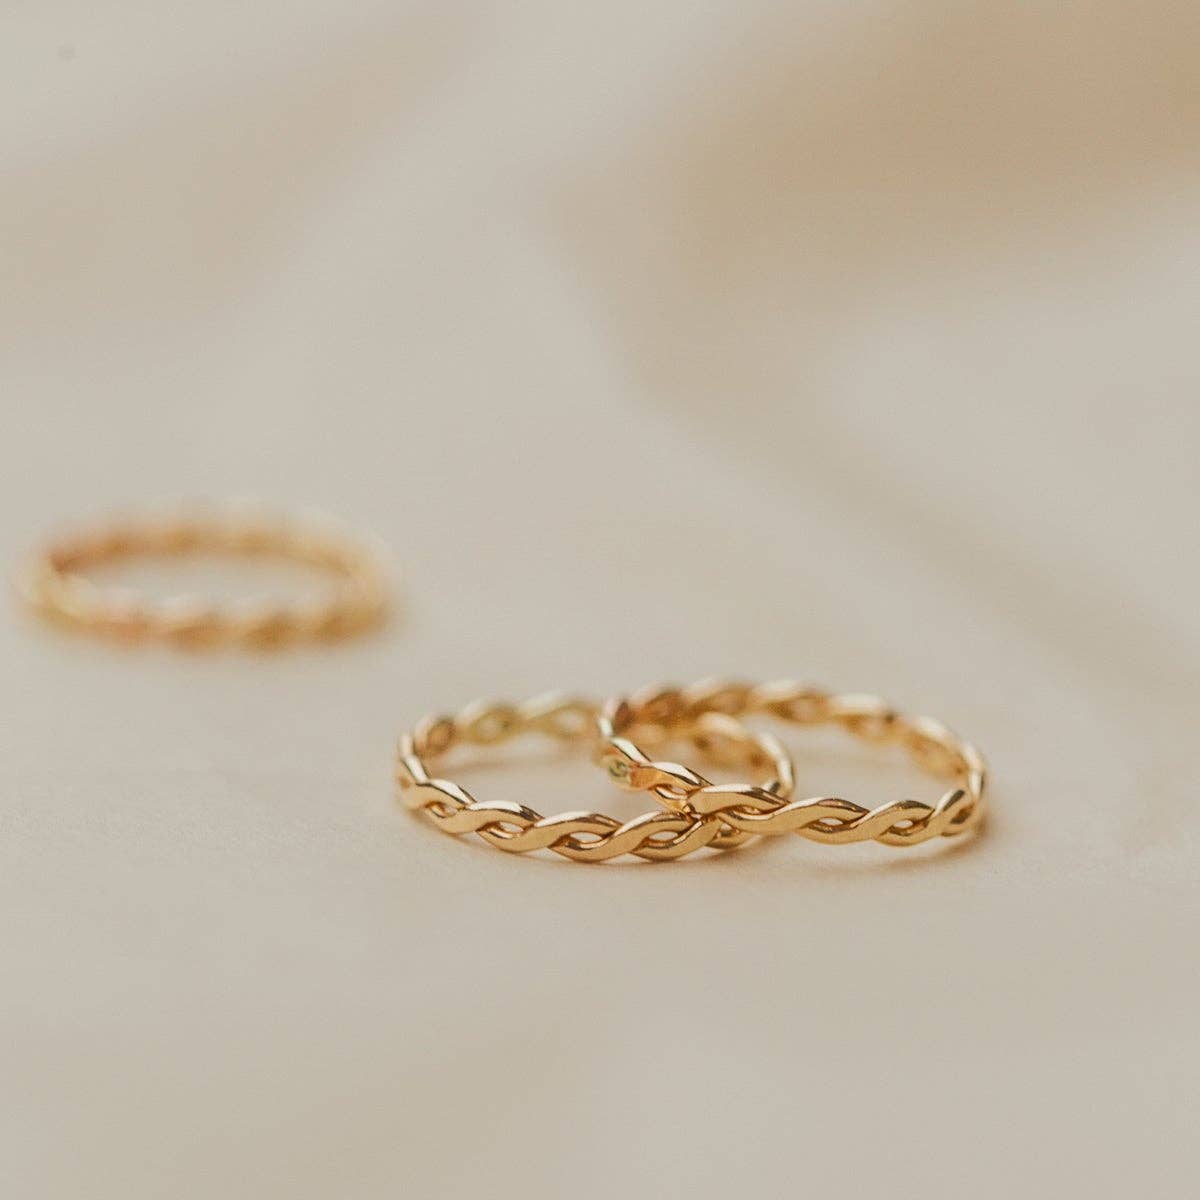 Laurel Ring - Gold Filled / 7